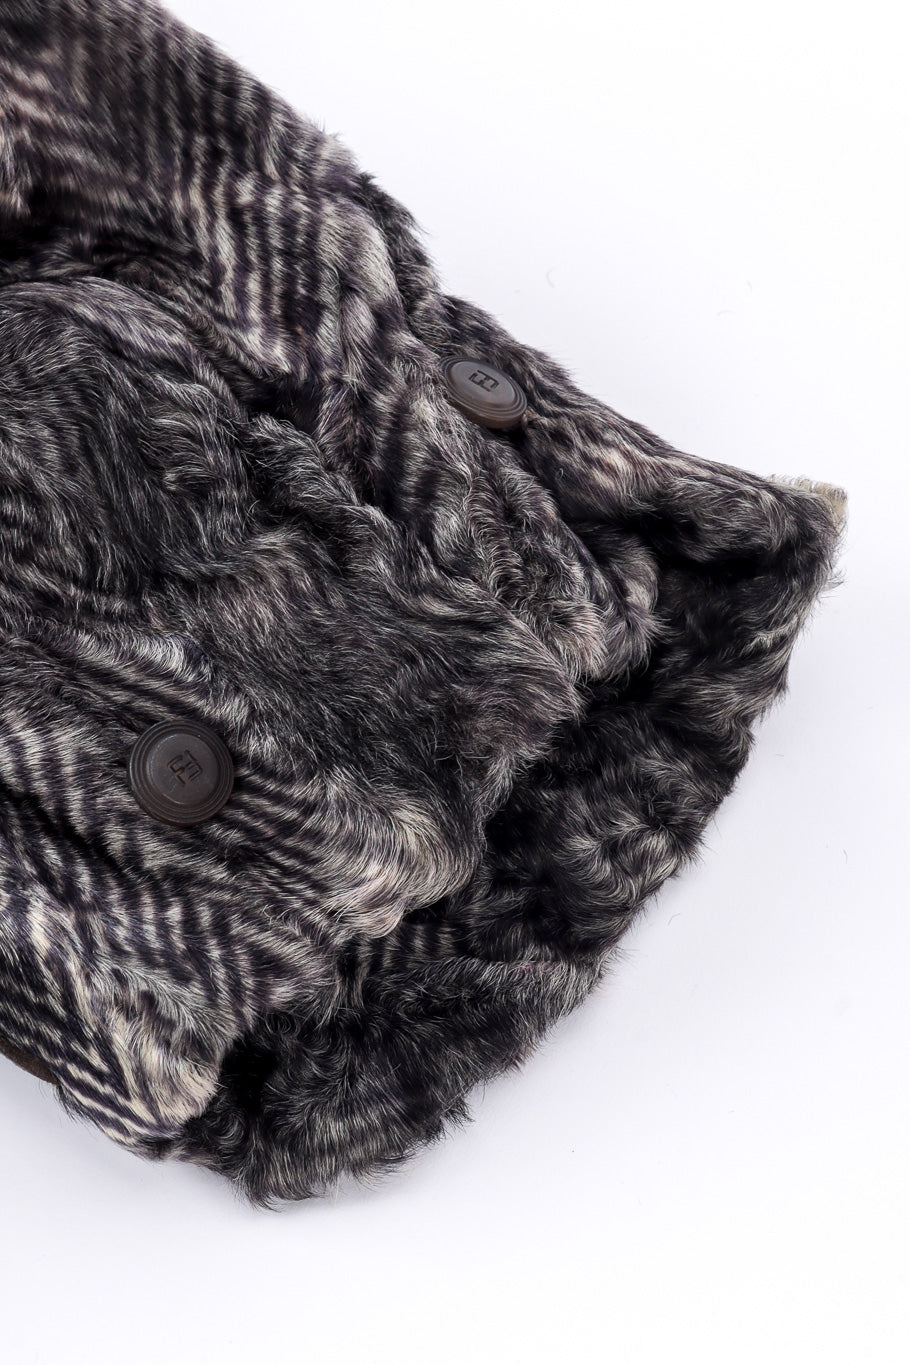 Vintage Fendi Lamb Fur Coat sleeve closeup @recessla